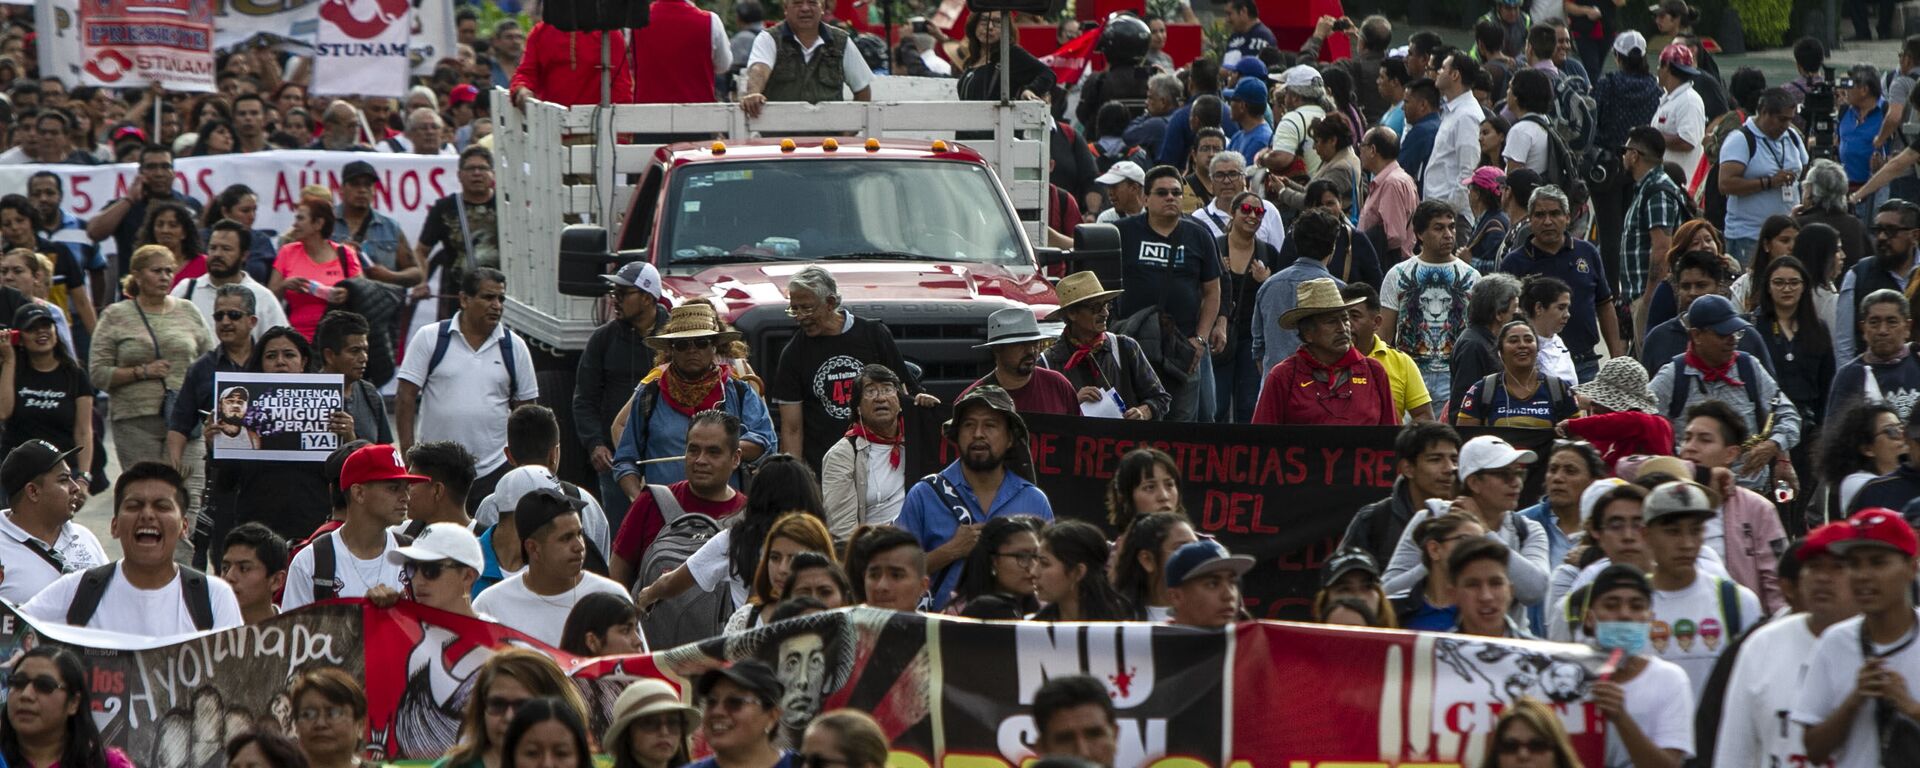 Asistentes a la manifestación en ciudad de México por los cinco años de la desaparición forzada de los 43 estudiantes de la normal rural de Ayotzinapa en el anti-monumento que recuerdo este crimen.  - Sputnik Mundo, 1920, 16.06.2021